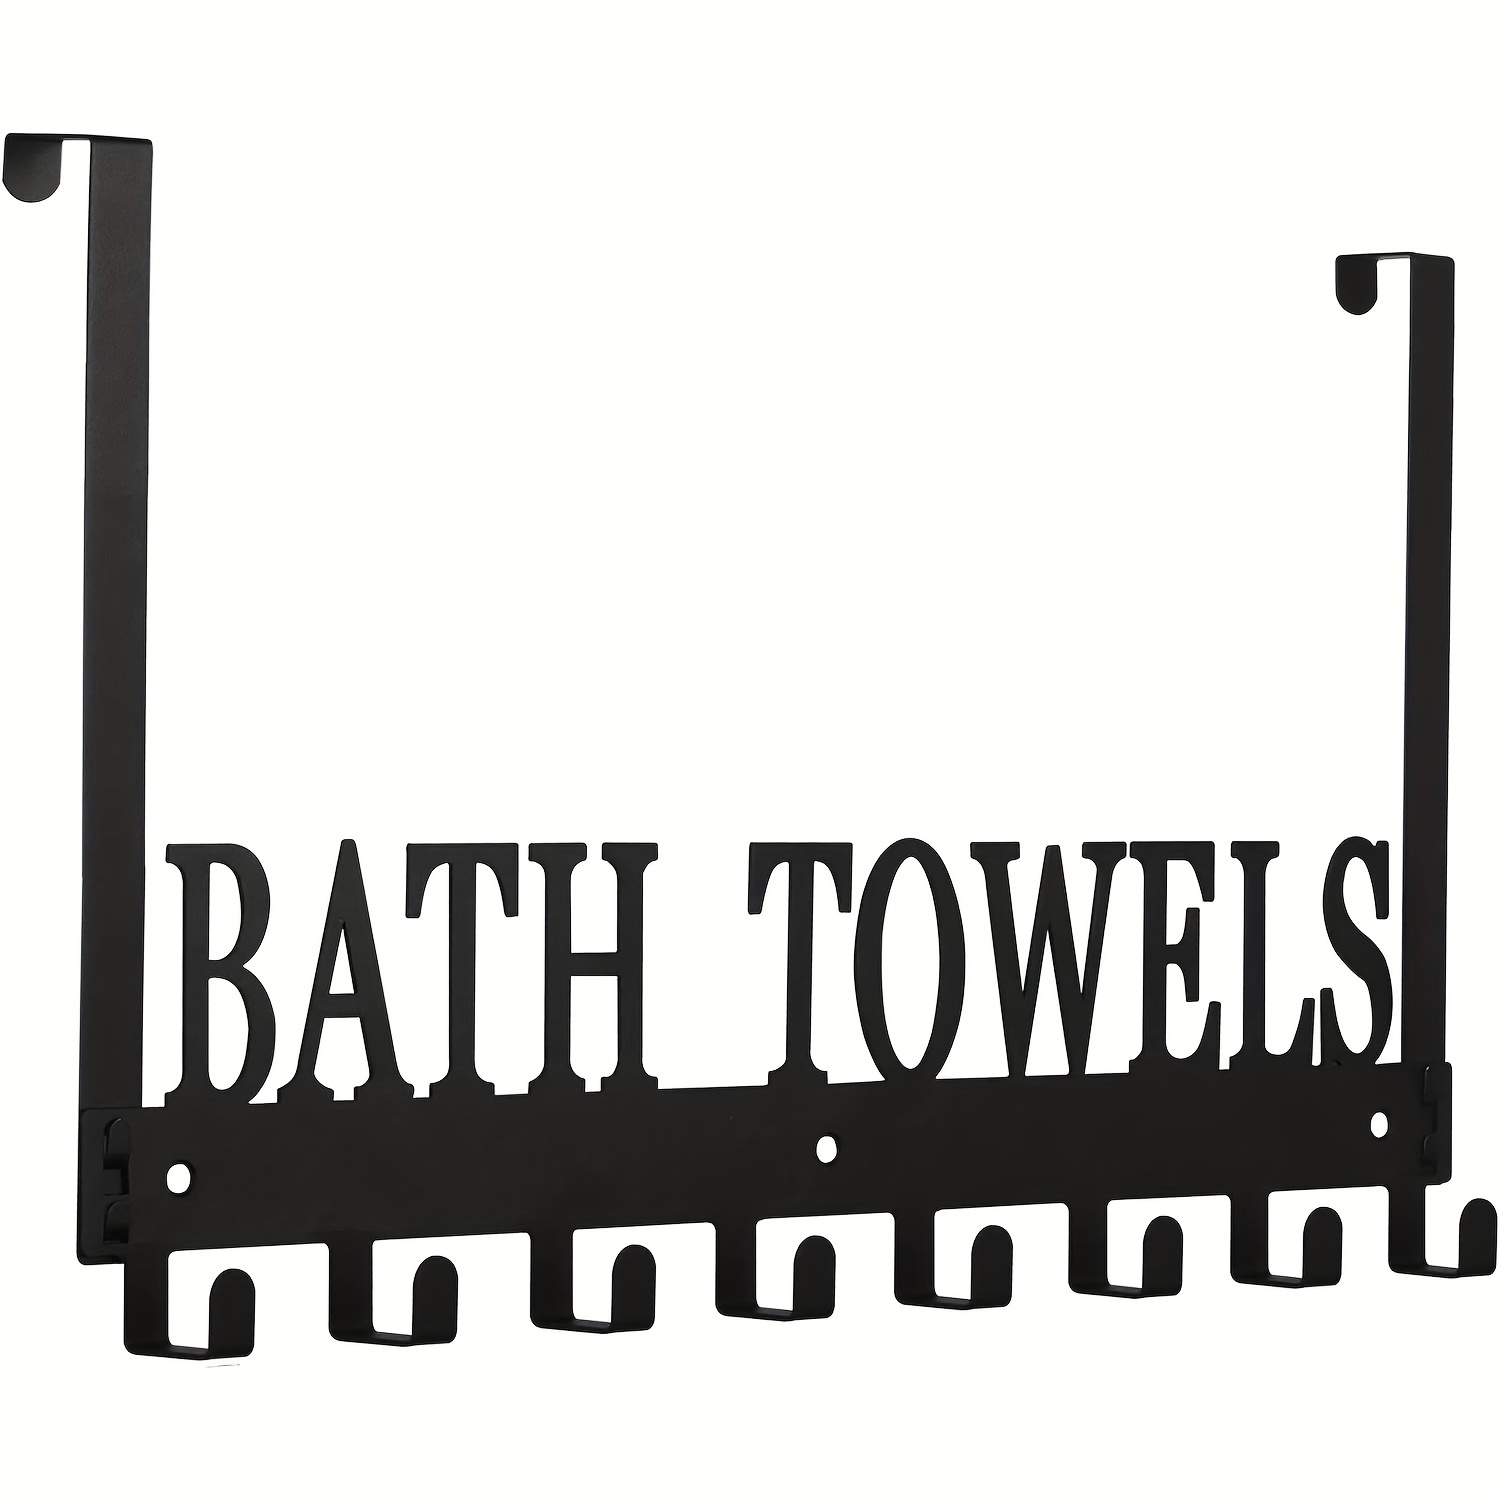 Gancho para toallas de baño / Almacenamiento de toallas de mano de